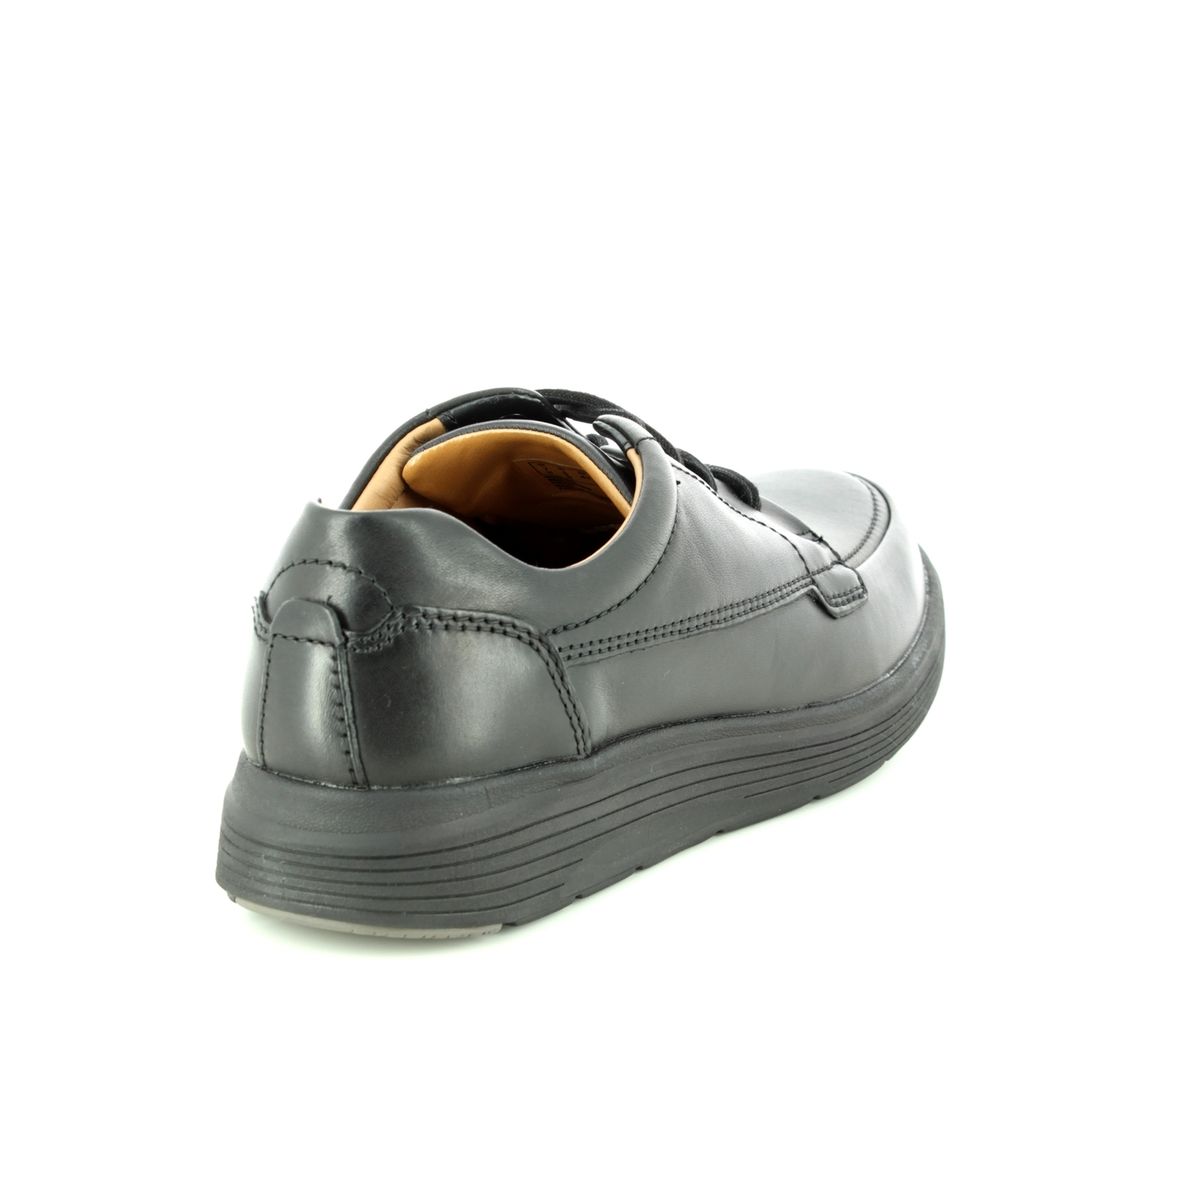 Clarks Un Abode Ease Black leather Mens comfort shoes 3698-48H